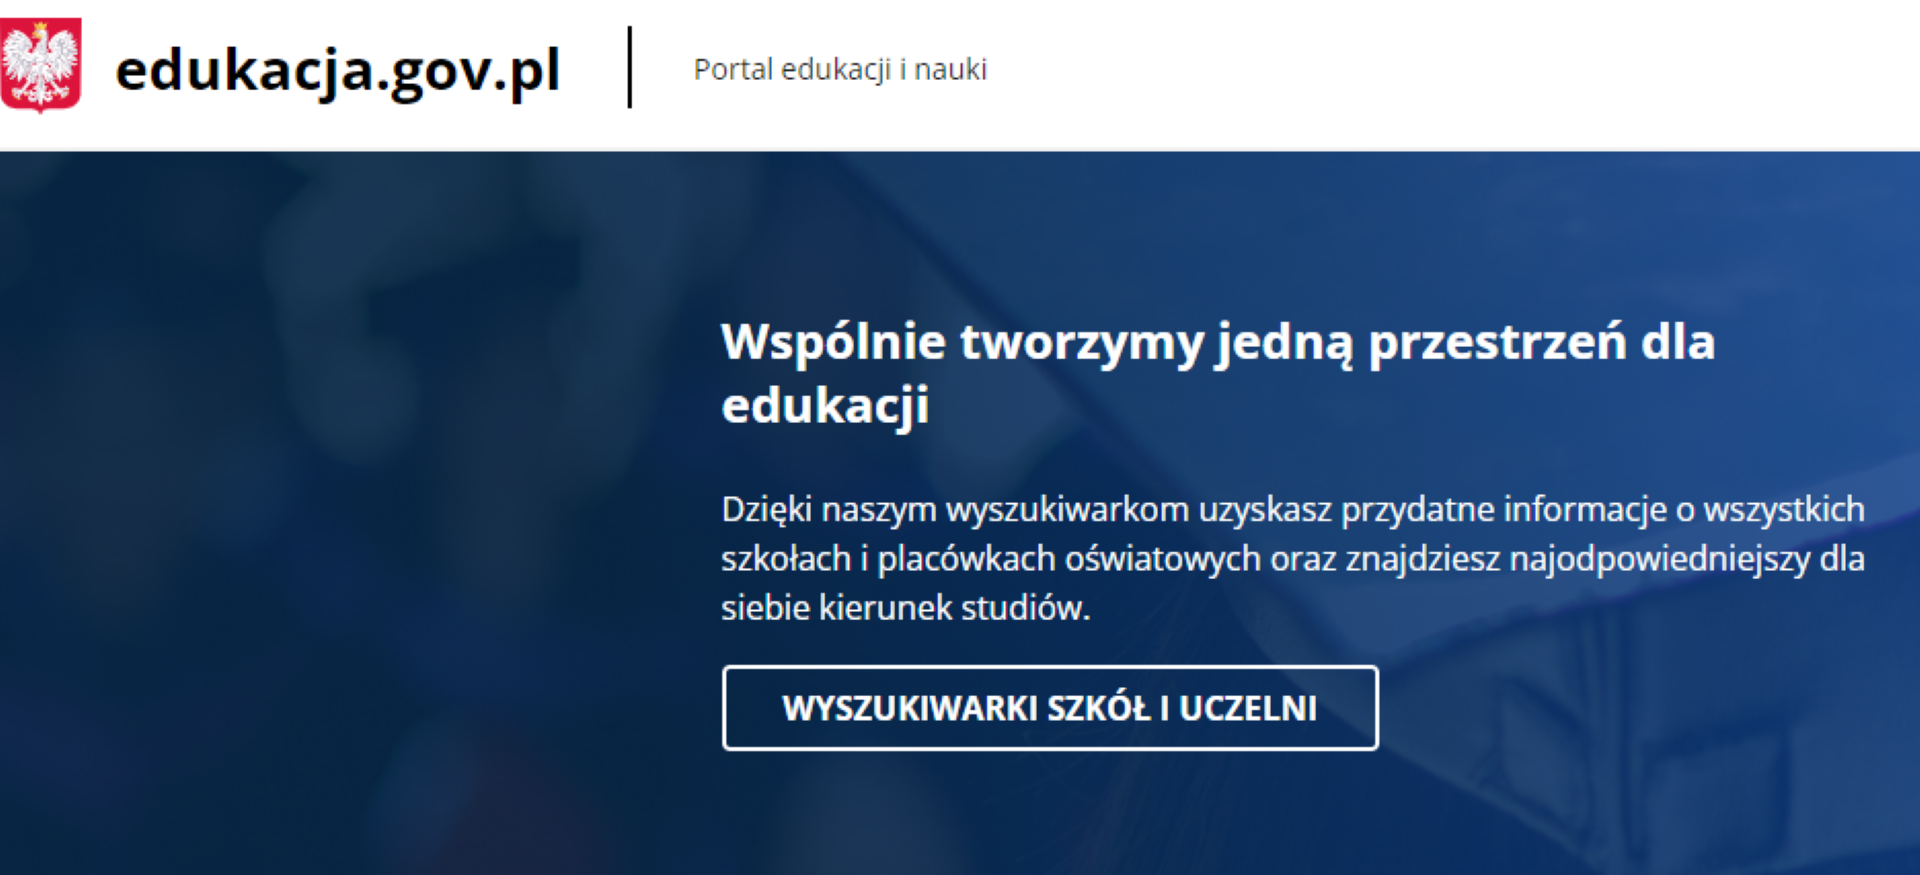 Portal edukacja.gov.pl – informator dla uczniów i maturzystów